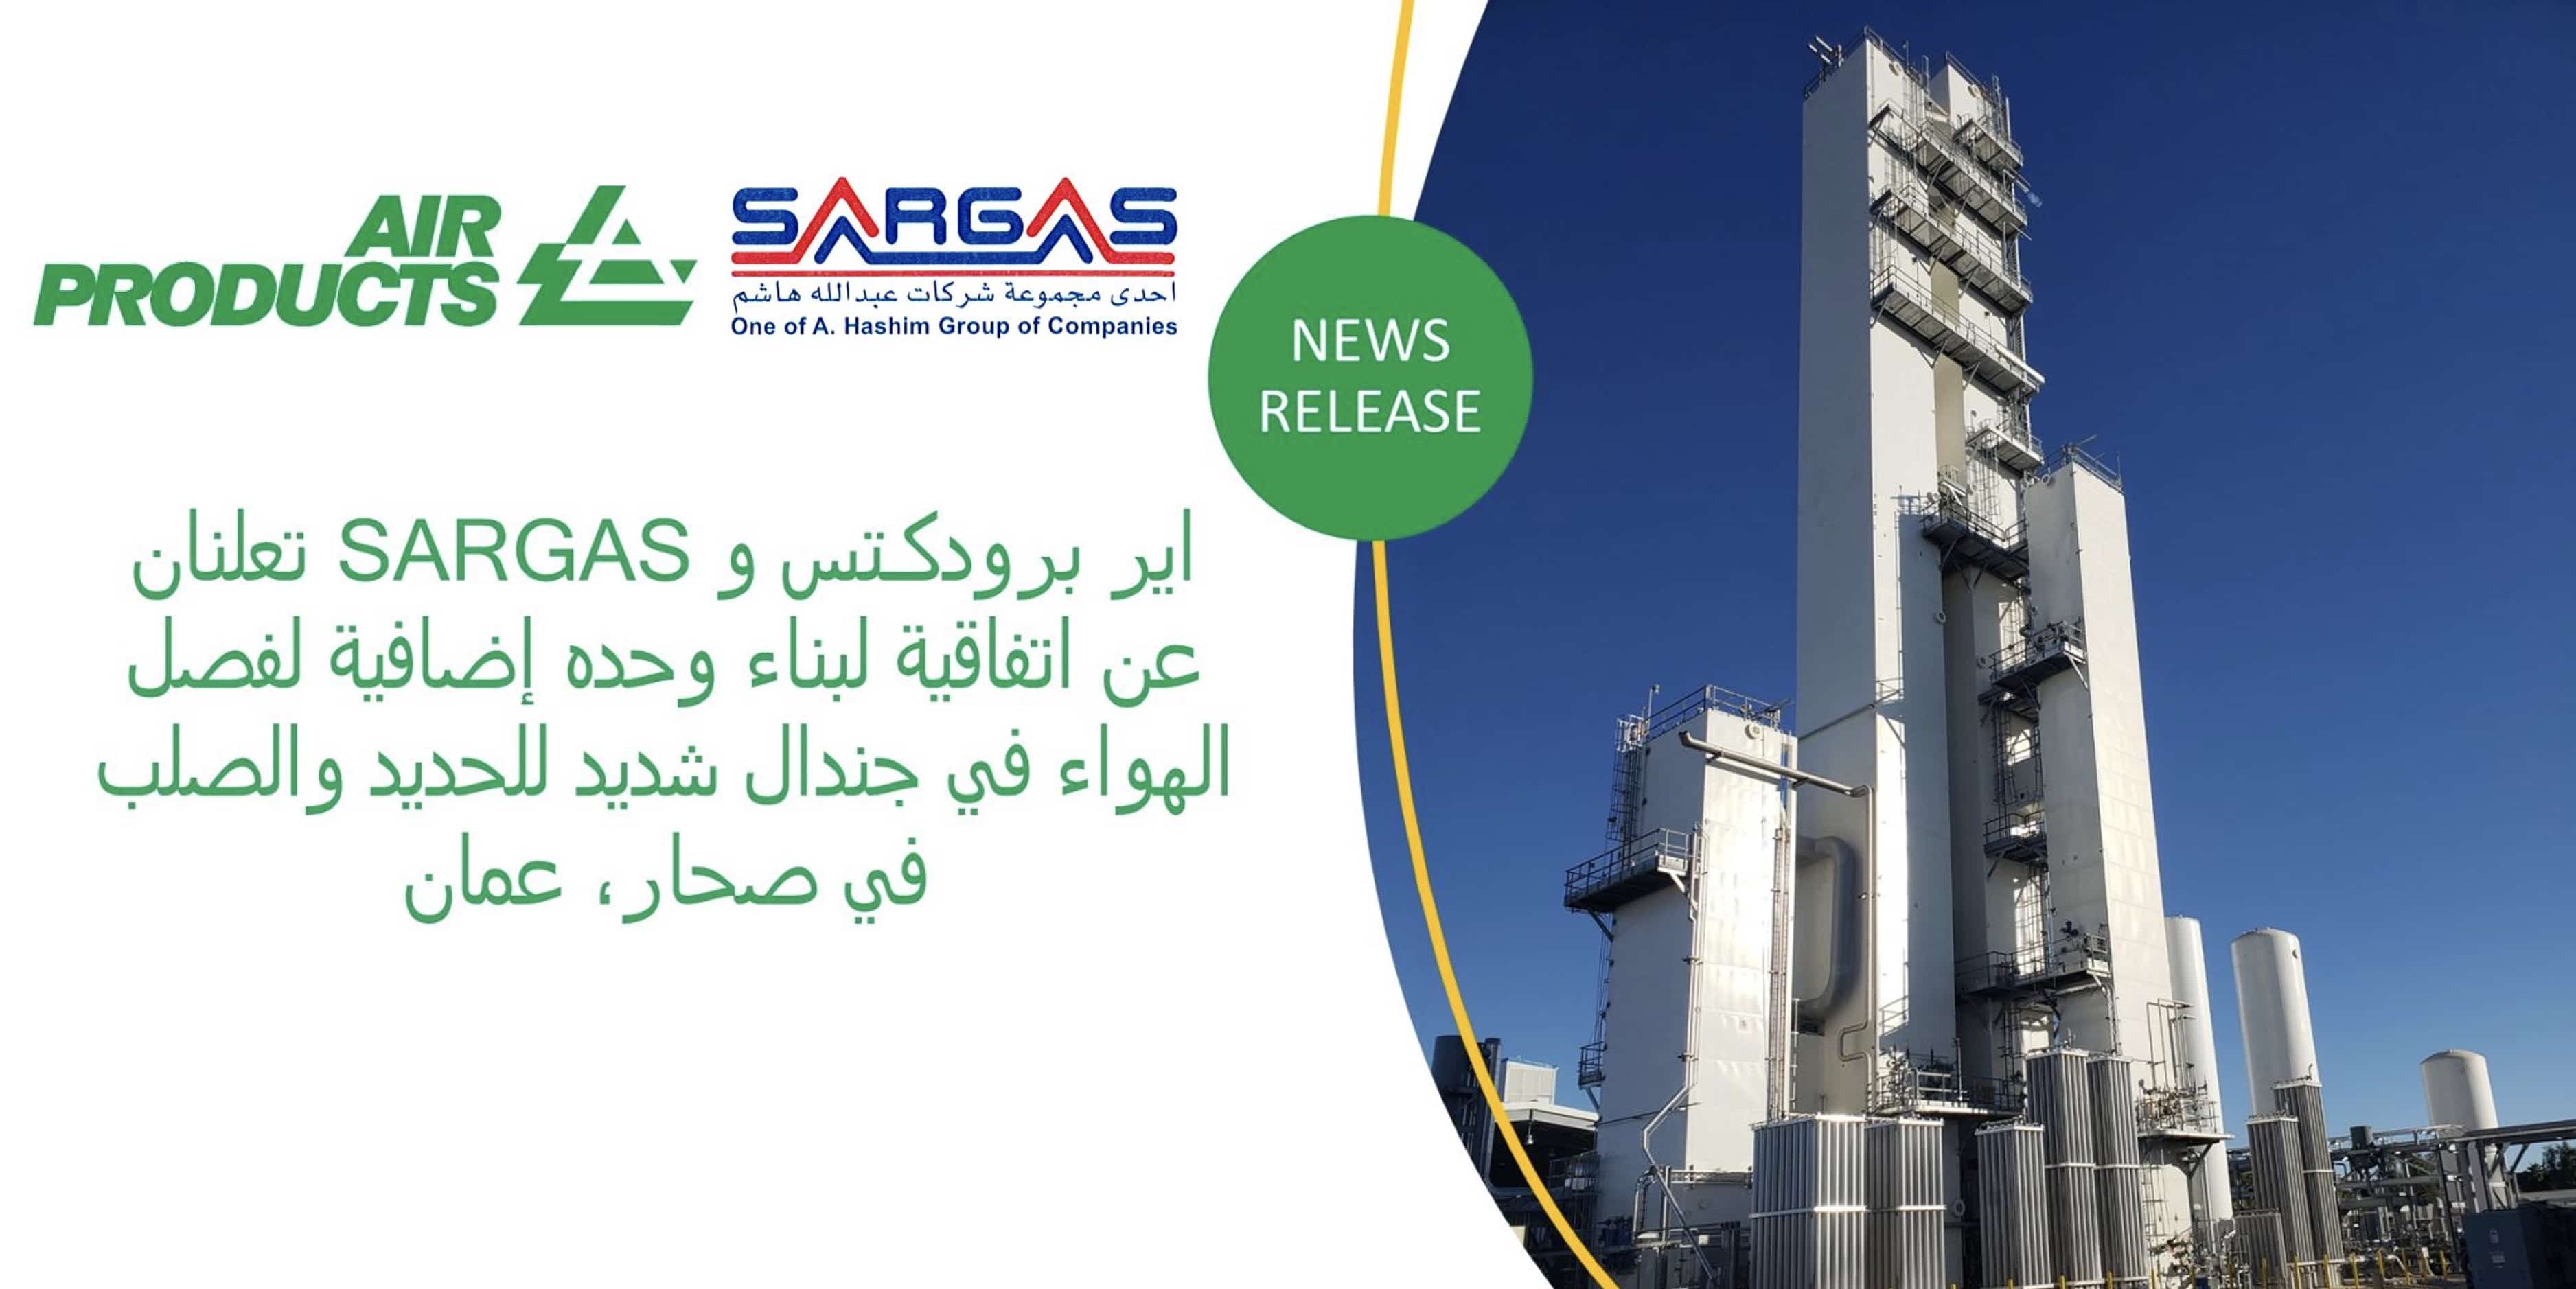 سارقاس و اير برودكتس تعلنان عن اتفاقية لبناء وحدة إضافية لفصل الهواء في جندال شديد للحديد والصلب في صحار، عمان